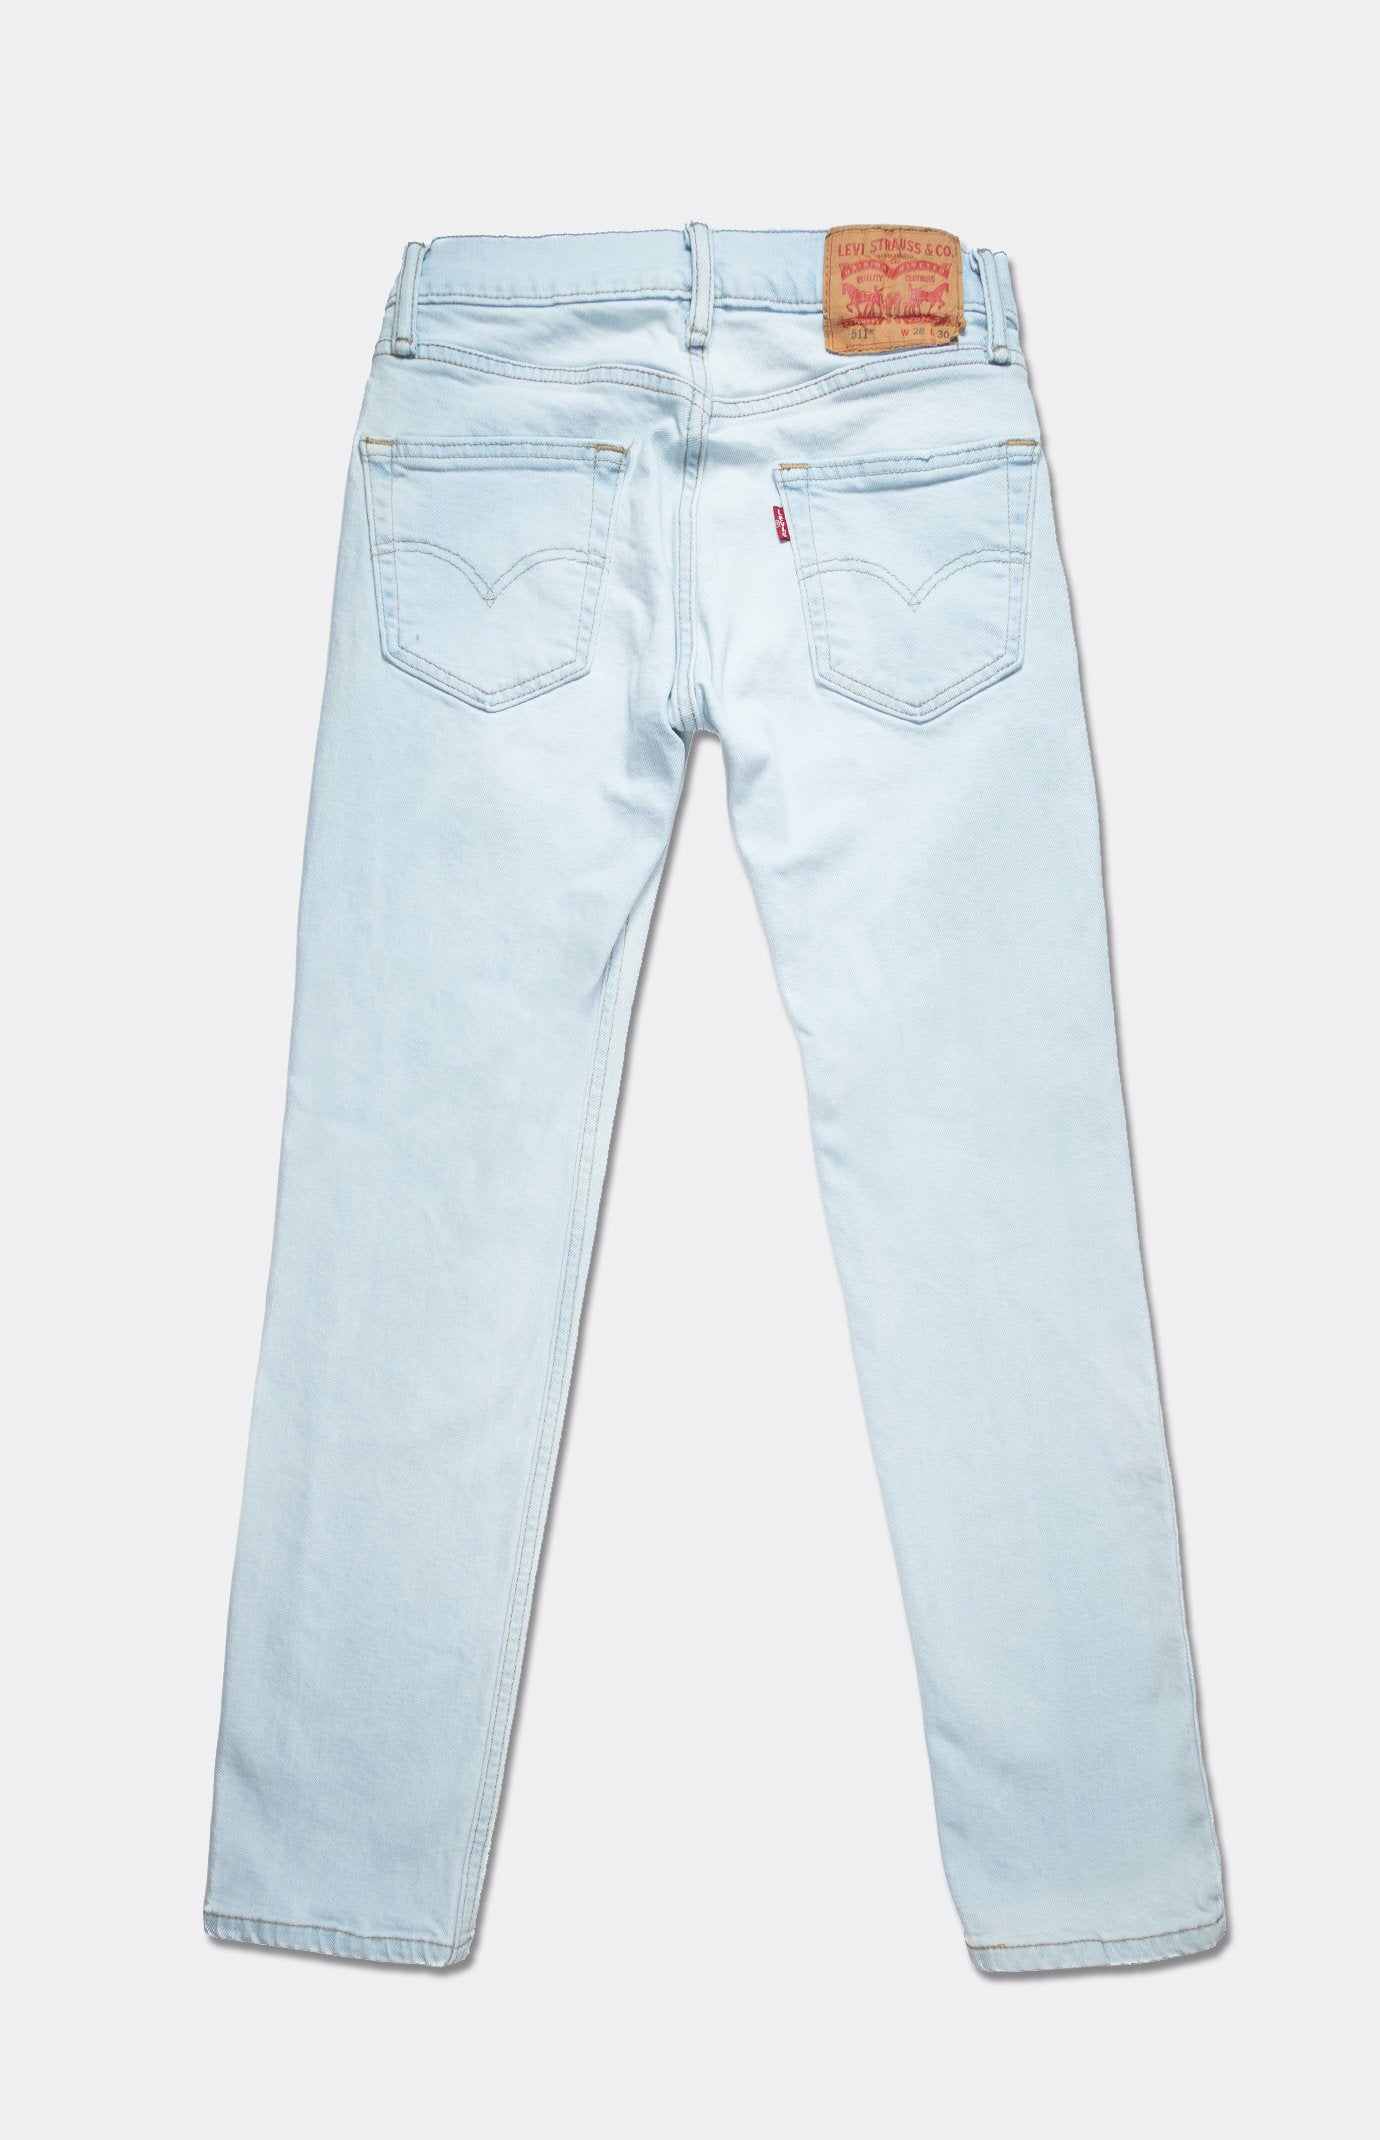 511 Jeans | Vintage Levis Jeans | Retro Denim – GOAT Vintage